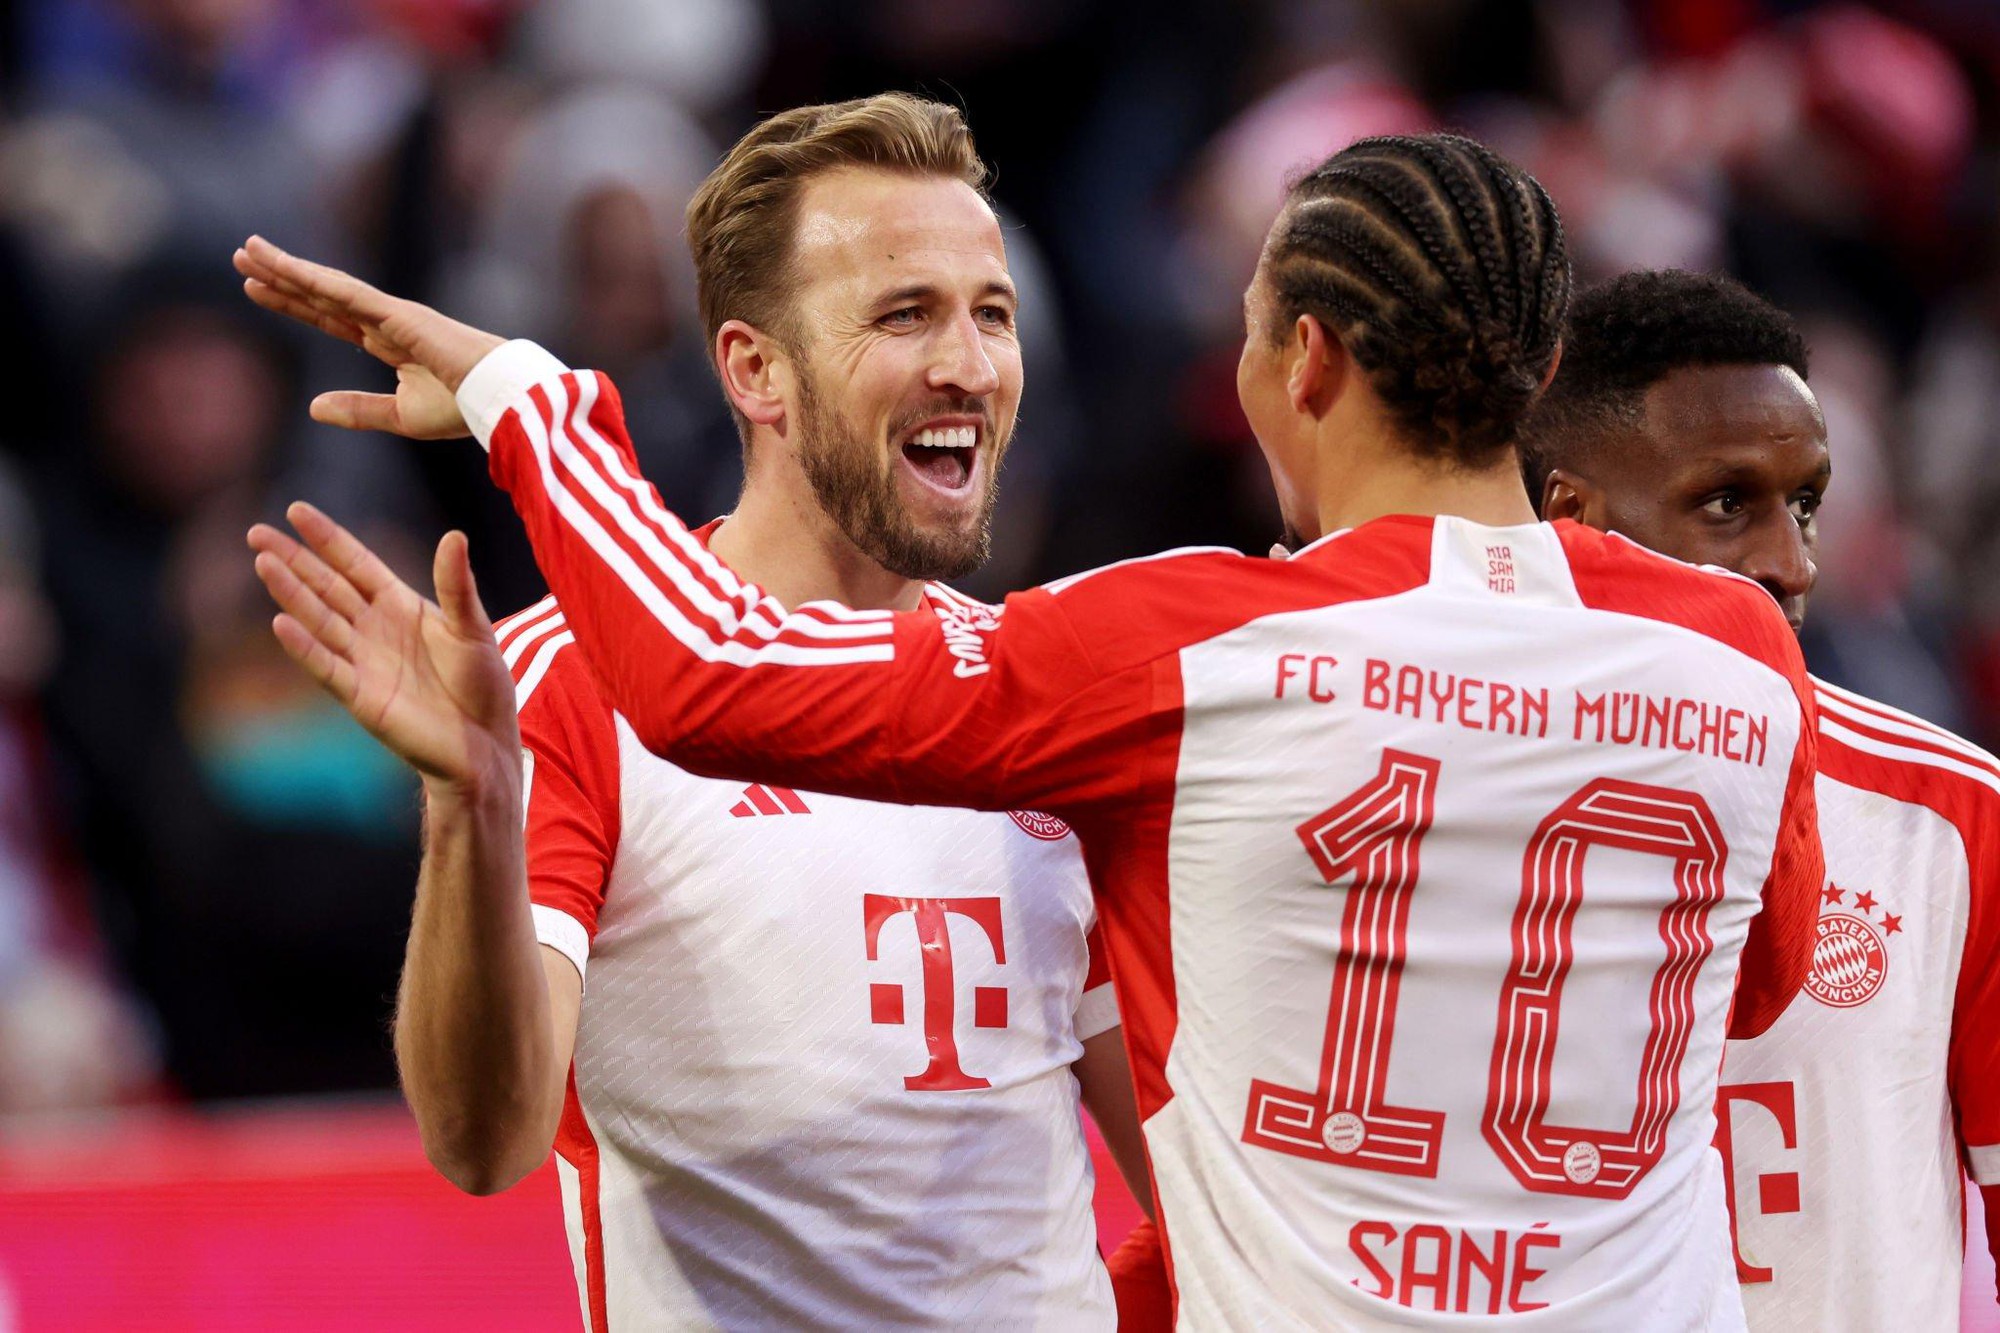 Lập cú đúp, Harry Kane tạo nên kỷ lục mới cùng Bayern Munich - Ảnh 1.